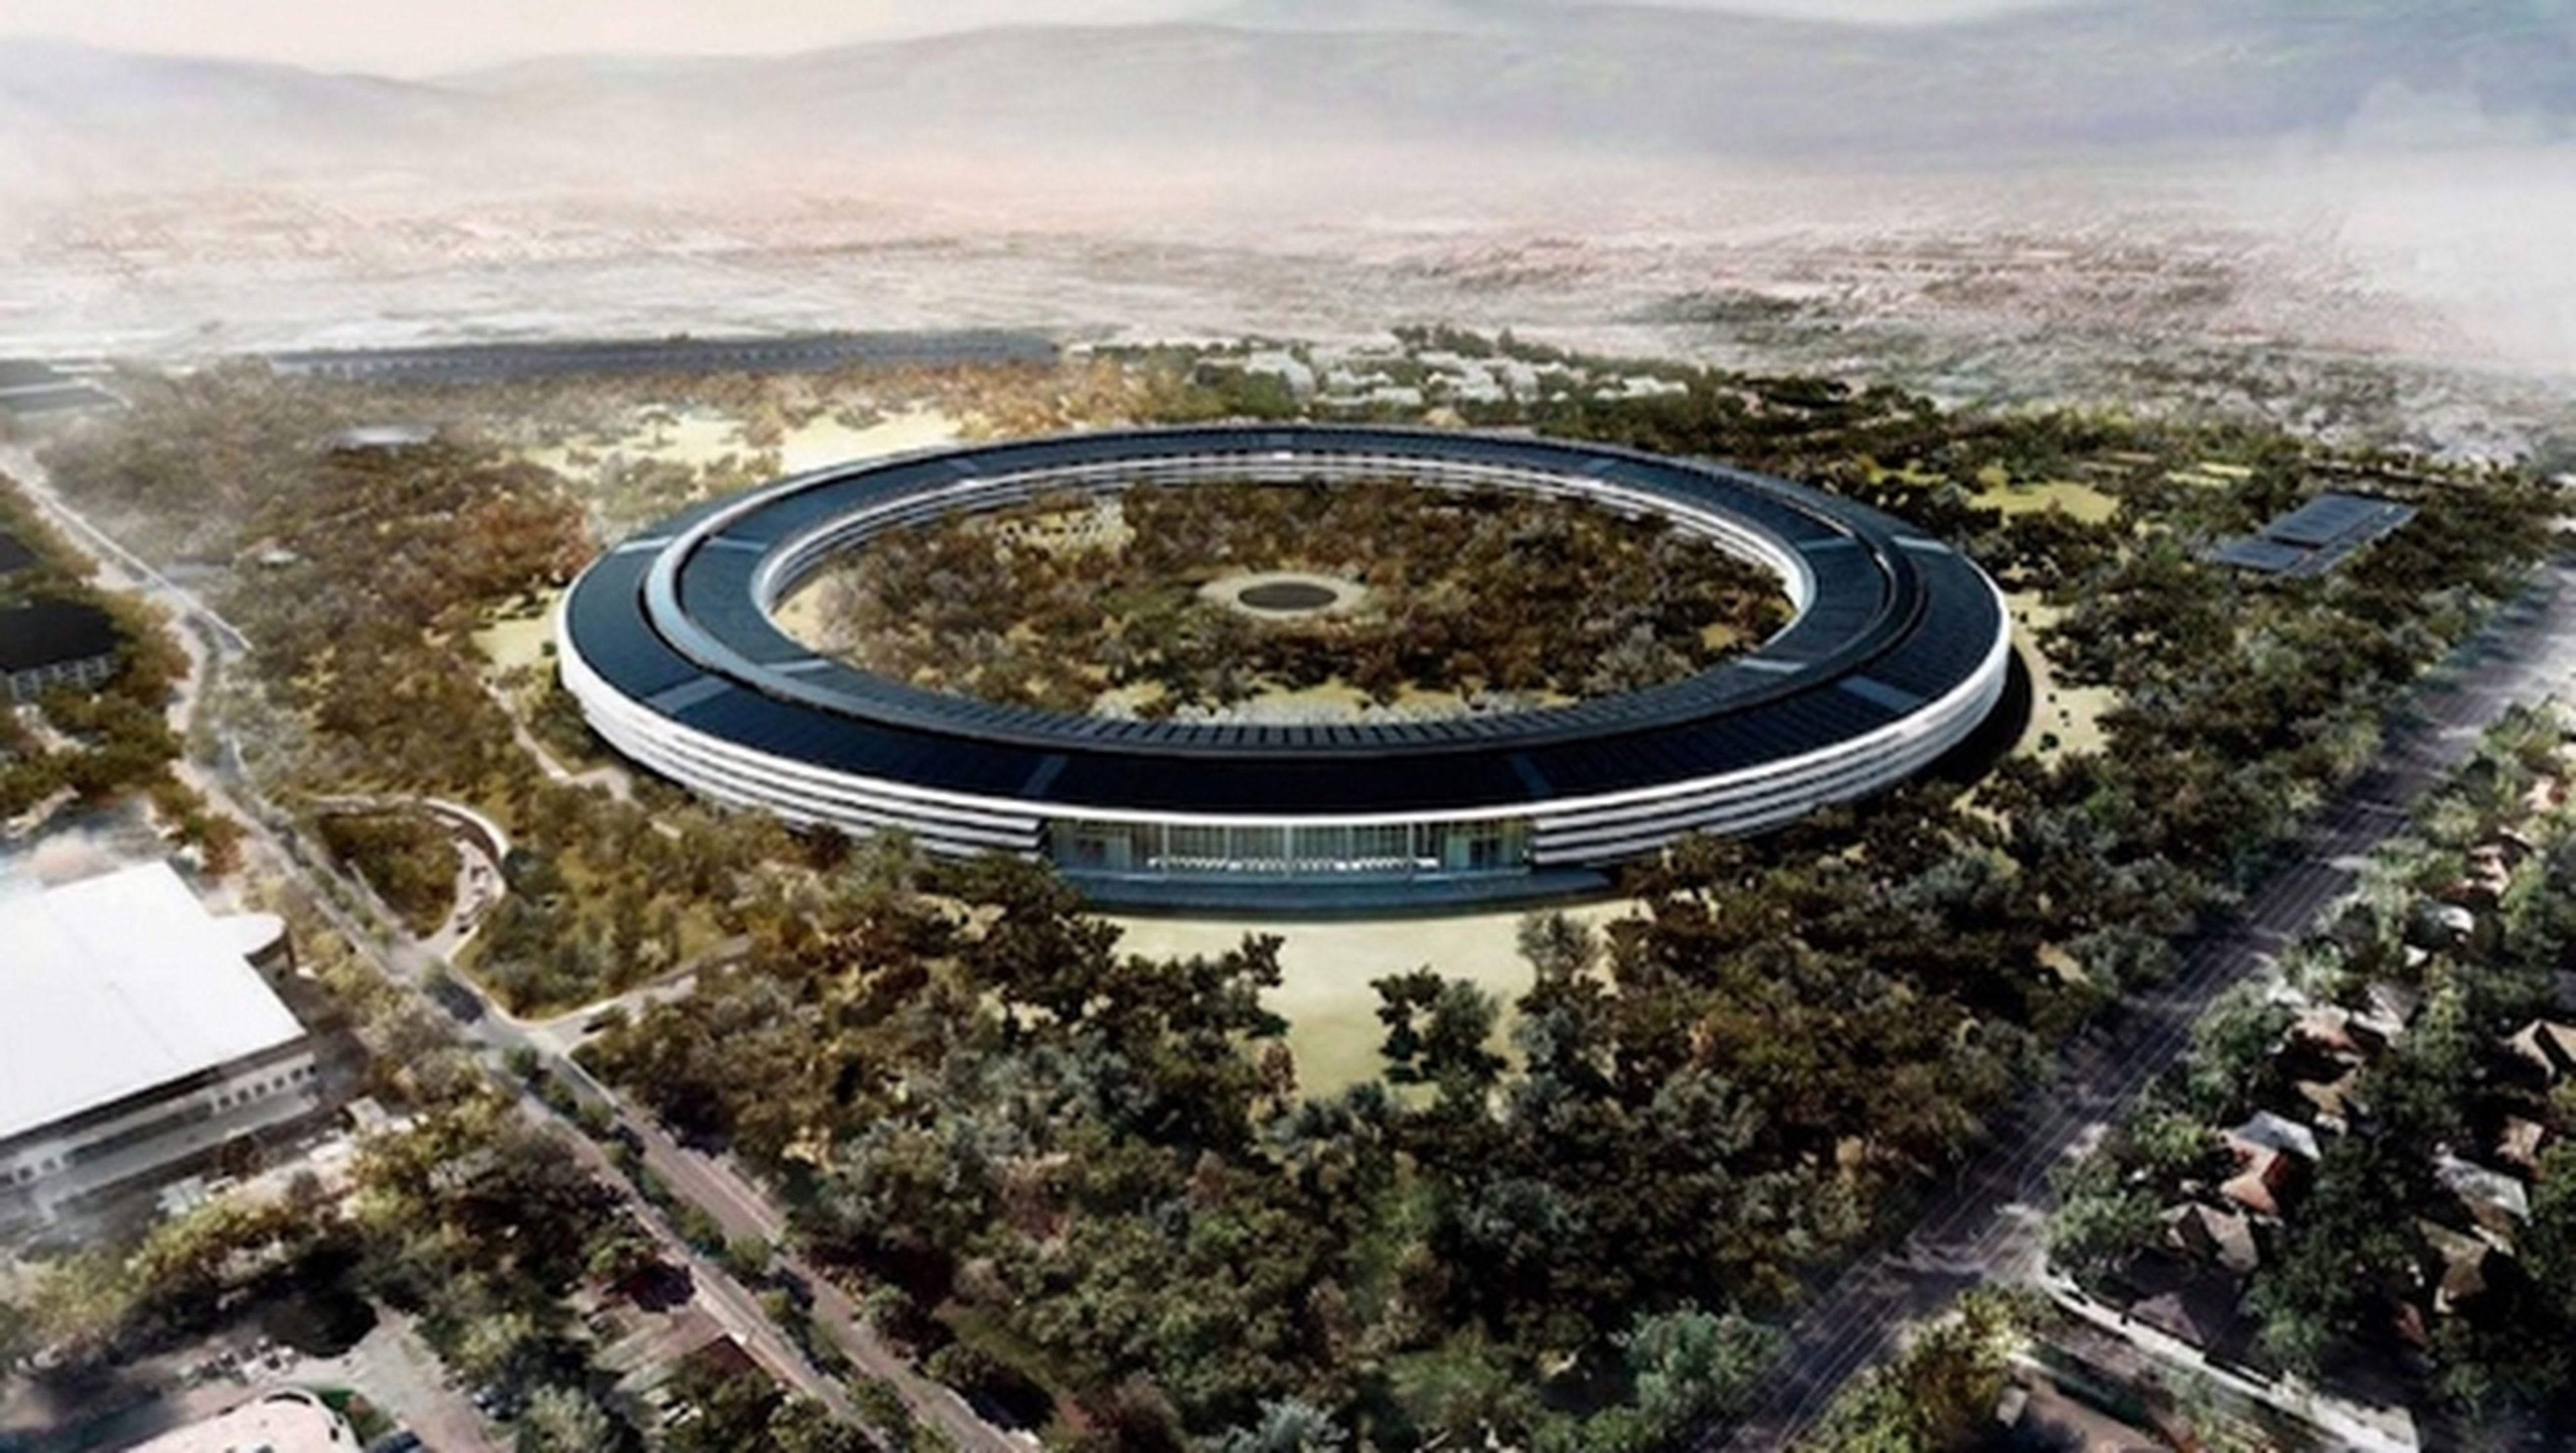 Un drone espía la sede central de Apple en construcción (vídeo)